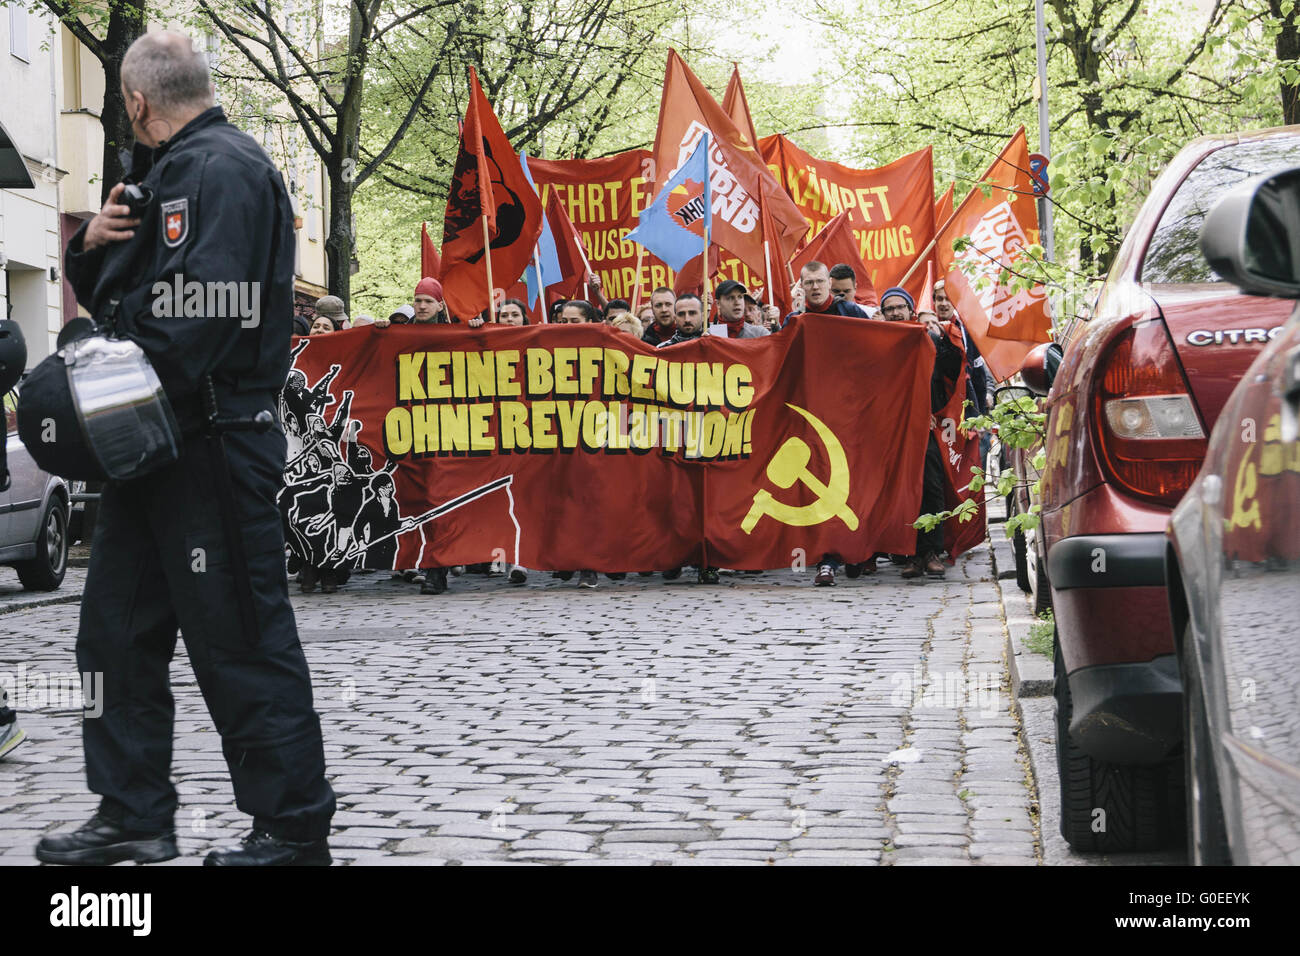 Berlin, Berlin, Allemagne. 1er mai 2016. Portesters au cours de la première des deux grandes manifestations à Berlin, les quartiers de Kreuzberg et Neukölln le 1er mai s'est tenue sous la devise 'Keine Befreiung ohne révolution ! [Pas de libération sans révolution !]'. Le Rallye est organisé par l'extrême-gauche et des groupes de gauche. Socialistes et des groupes antifascistes ont été l'organisation de la soi-disant ''1er mai révolutionnaire'' de démonstration depuis 1987. © Jan Scheunert/ZUMA/Alamy Fil Live News Banque D'Images